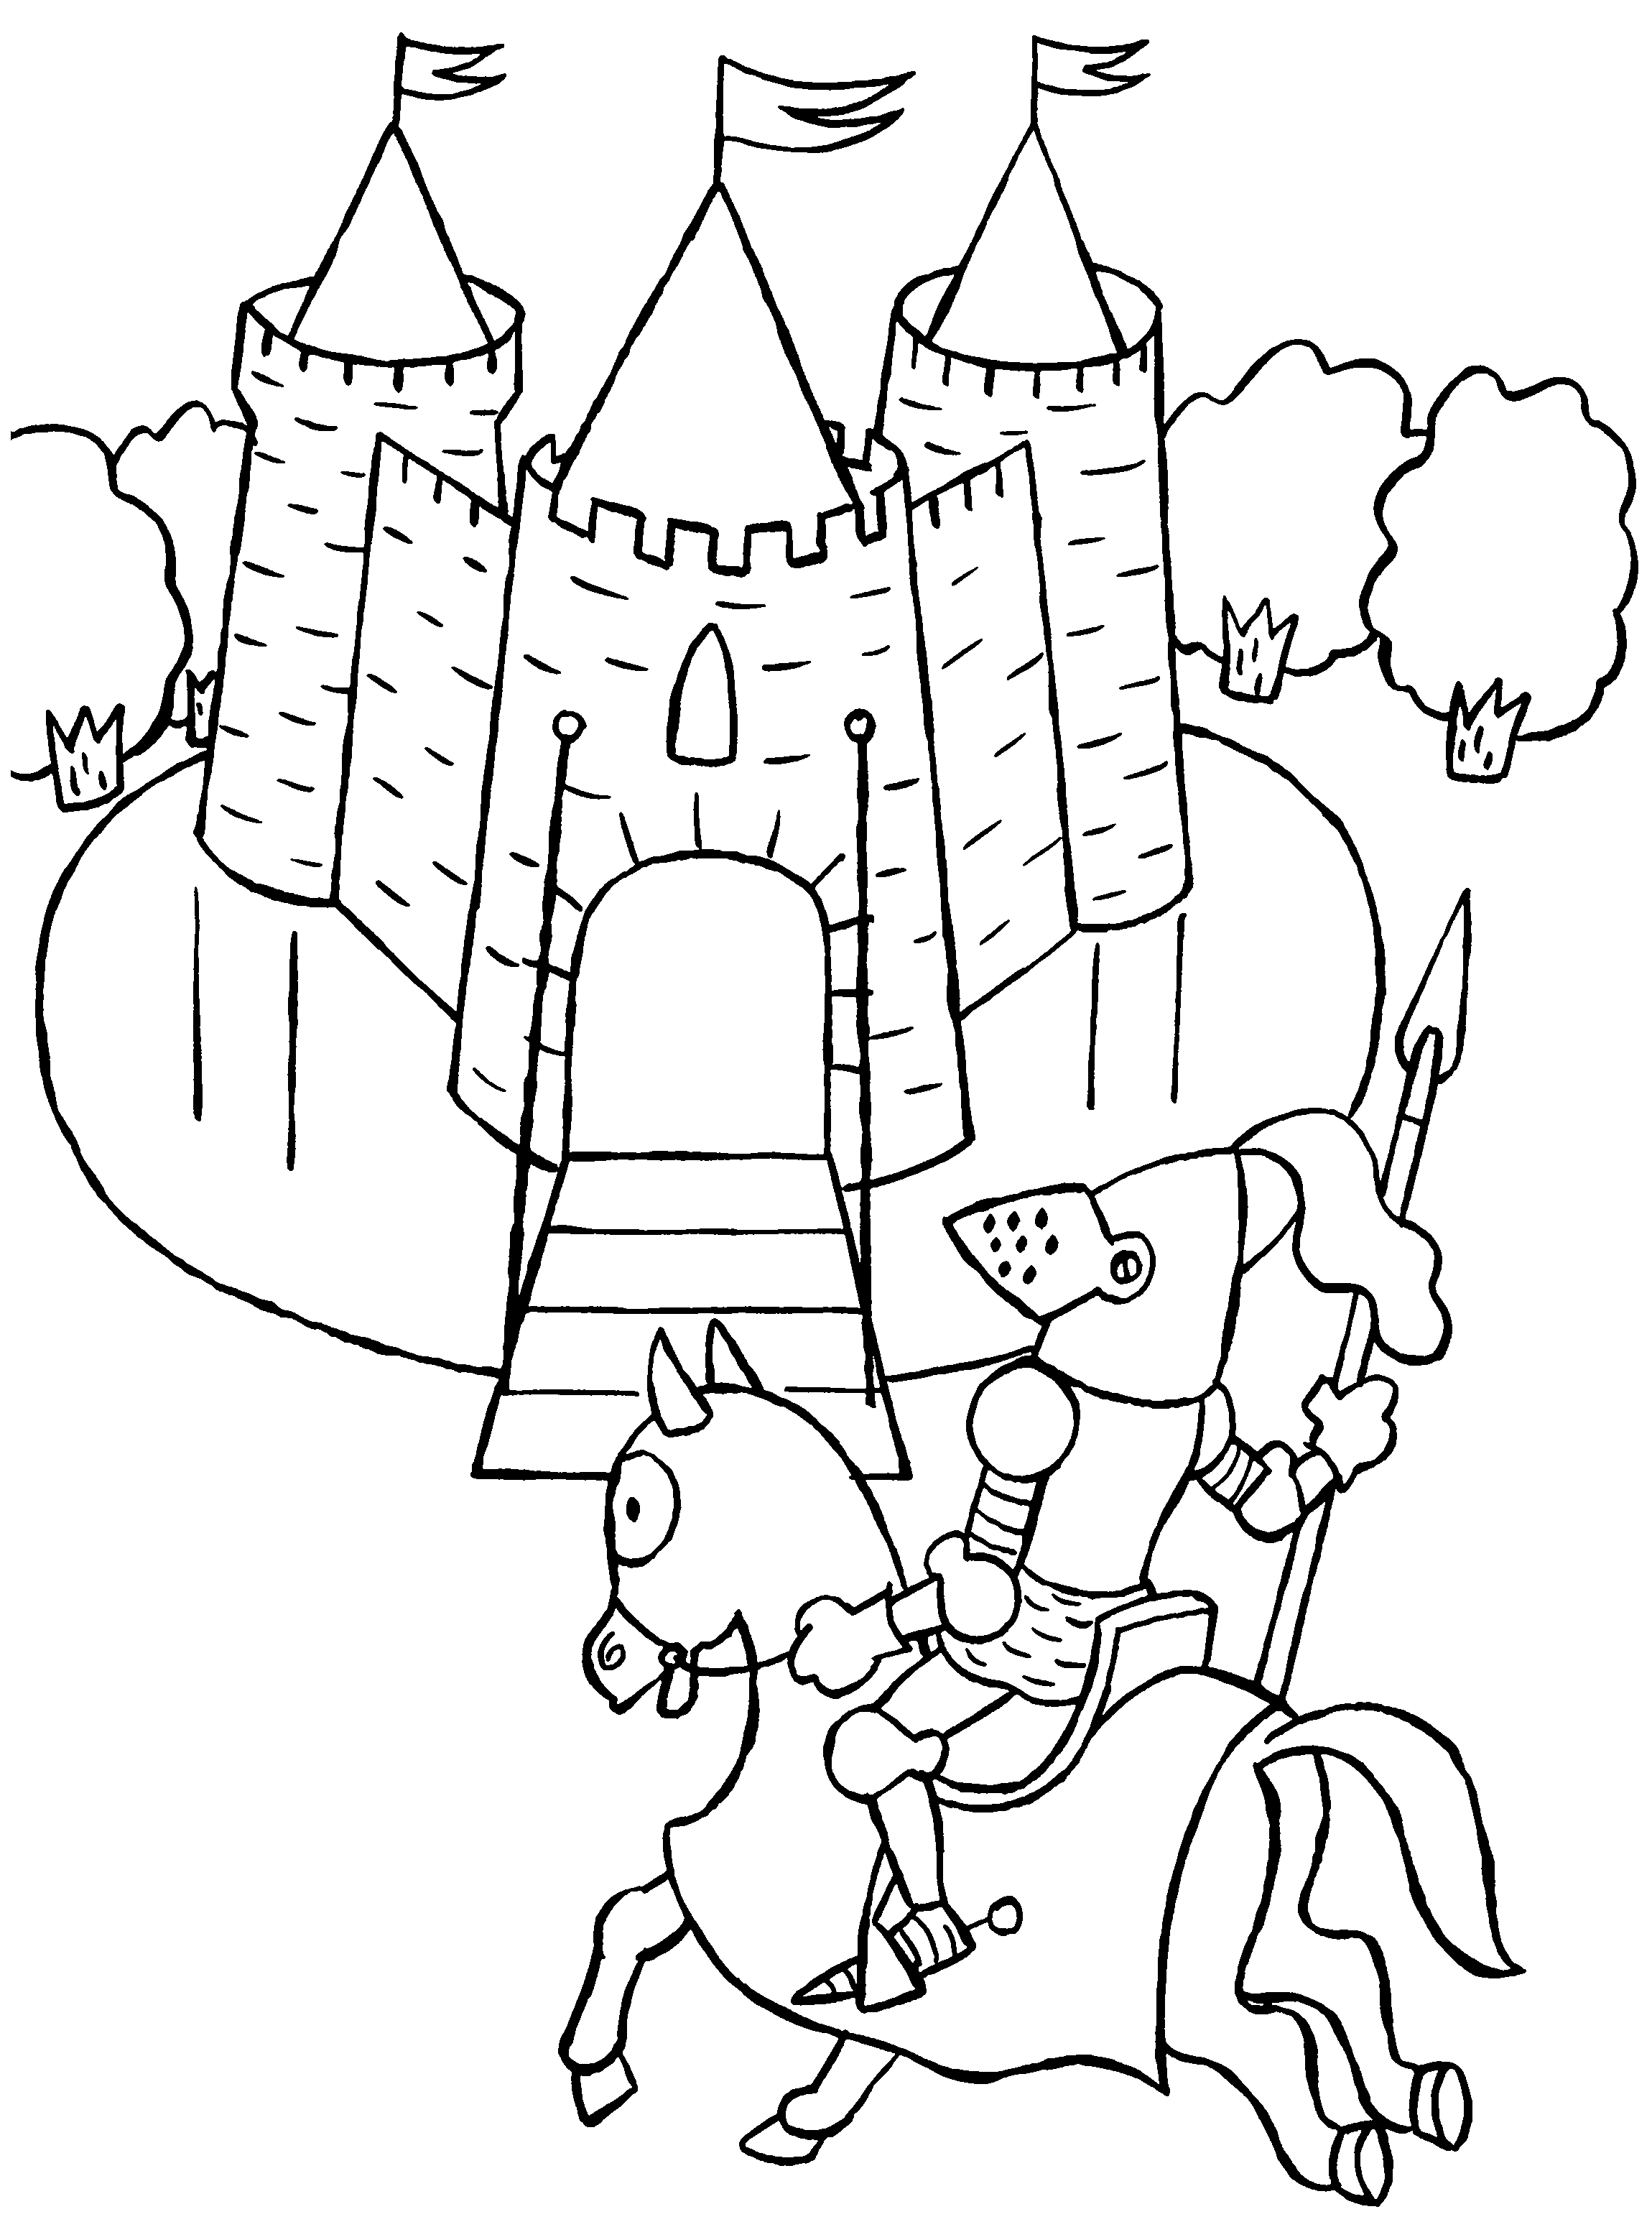 Замок рыцаря раскраска для детей